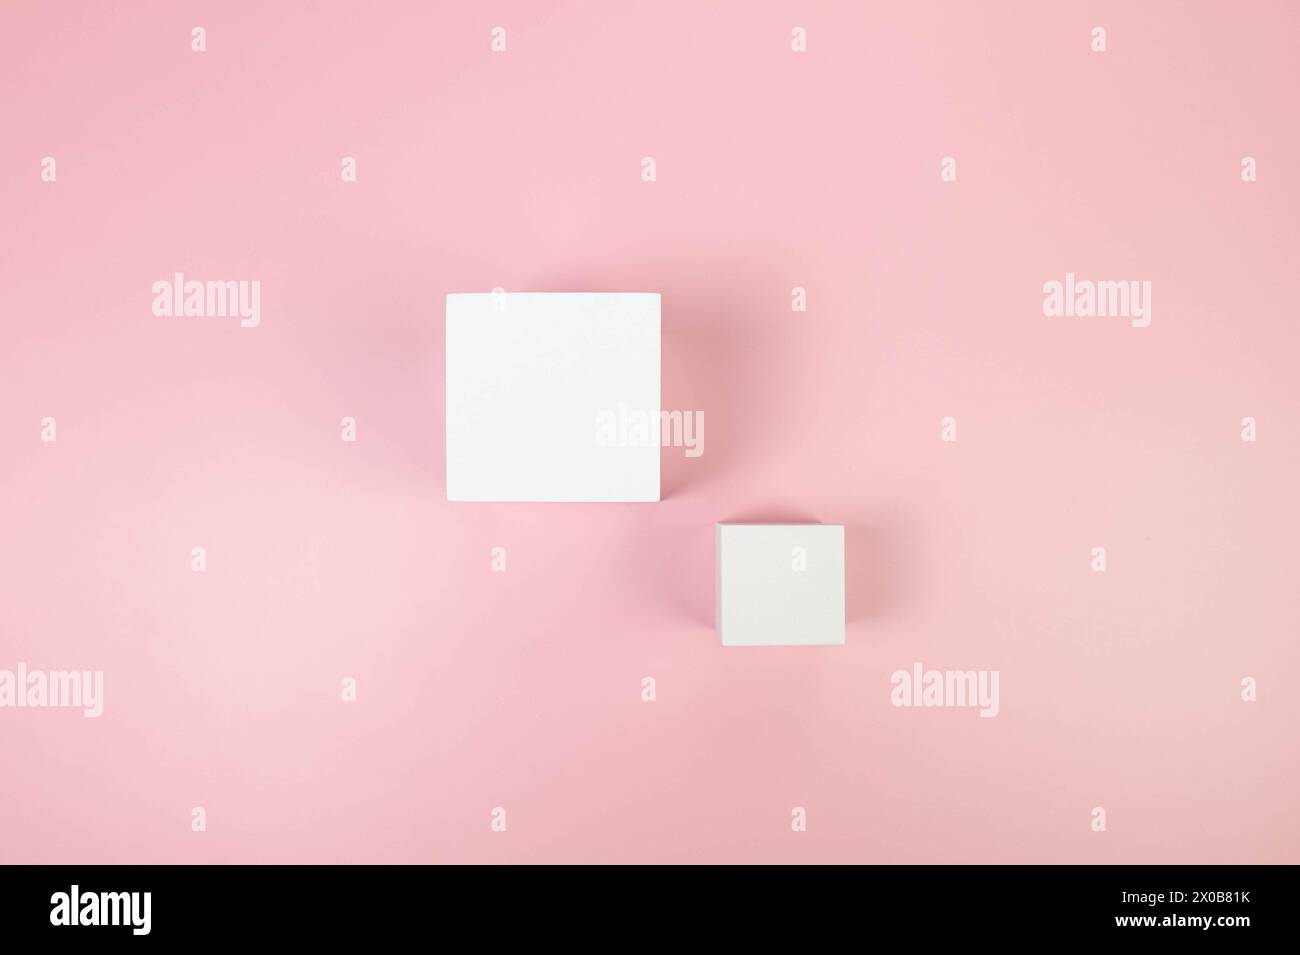 Draufsicht von zwei weißen quadratischen Podesten auf rosa Hintergrund. Geometrische abstrakte Formen für die kosmetische Produktpräsentation. Flache Ladefläche, Kopierraum. Stockfoto